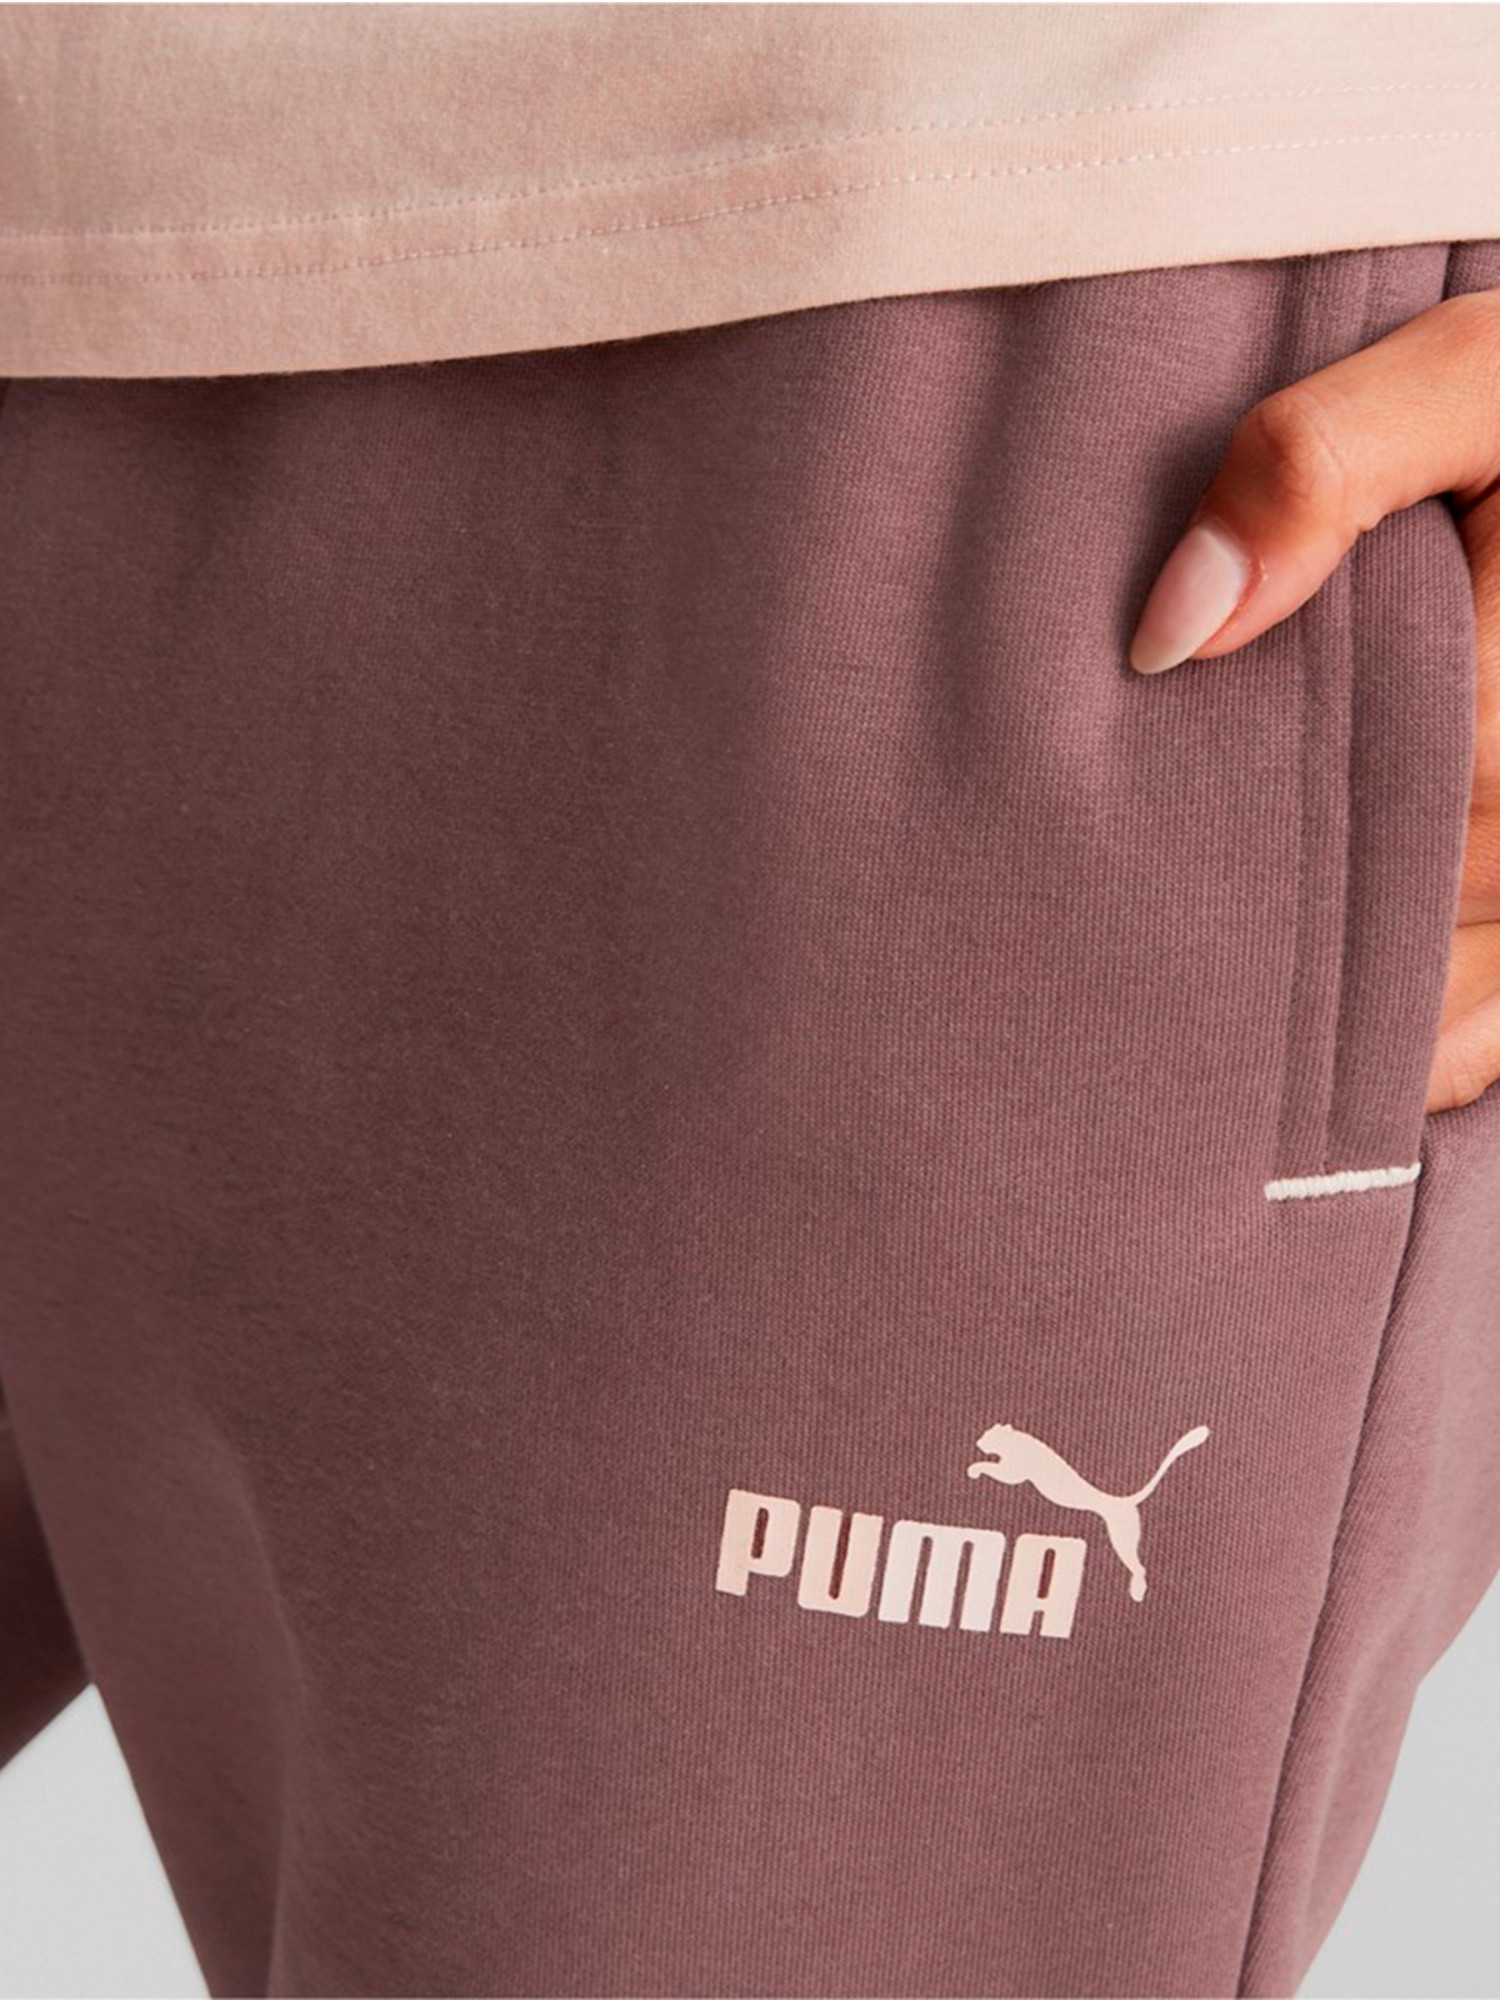 Брюки женские Puma Puma Power Safari Pants бордовые 67175575 изображение 6